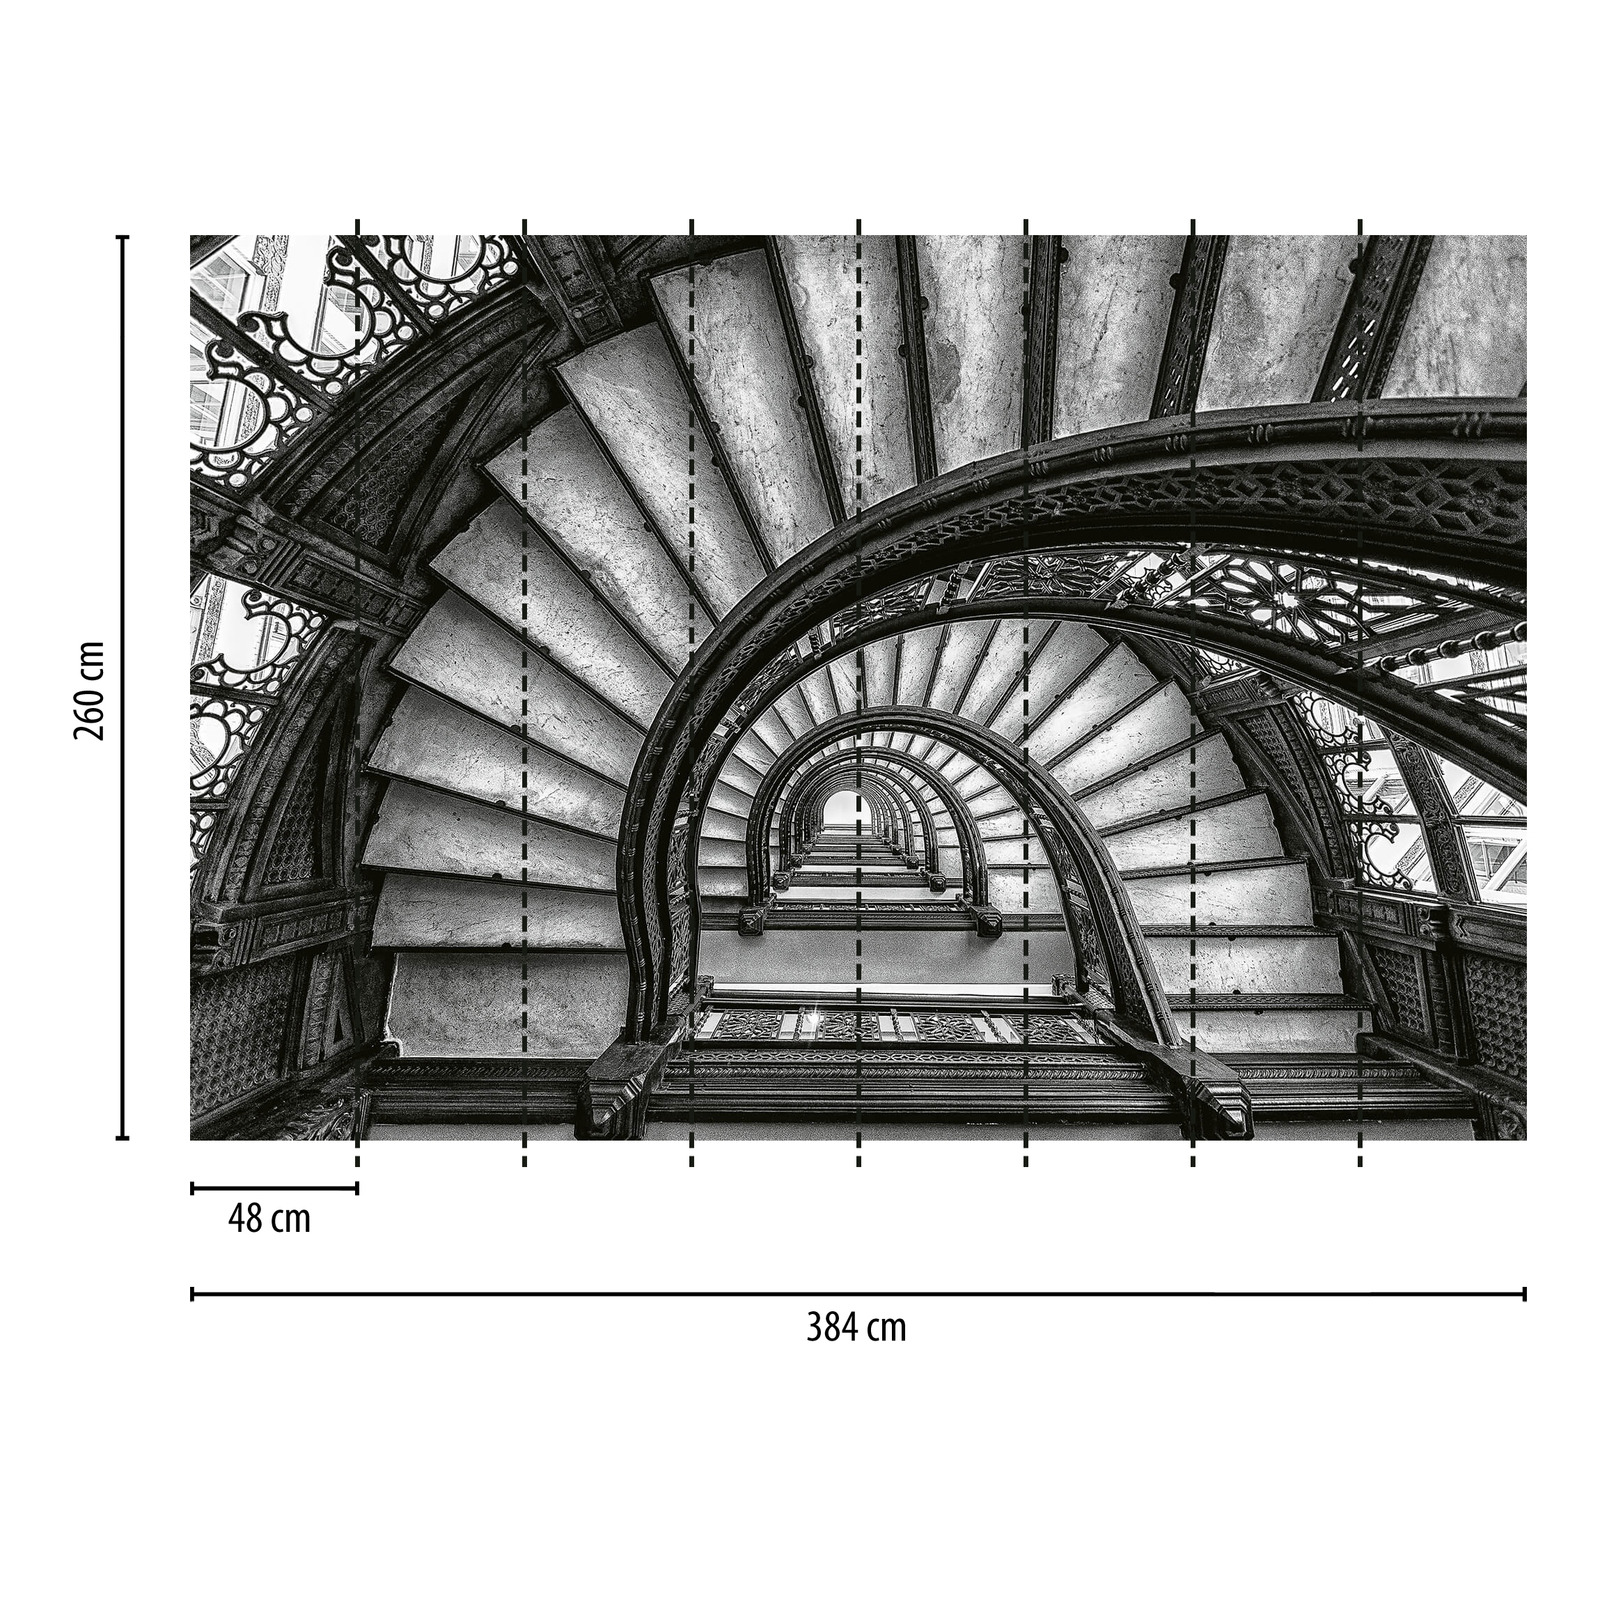             Fototapete alte Treppen – Grau, Weiß, Schwarz
        